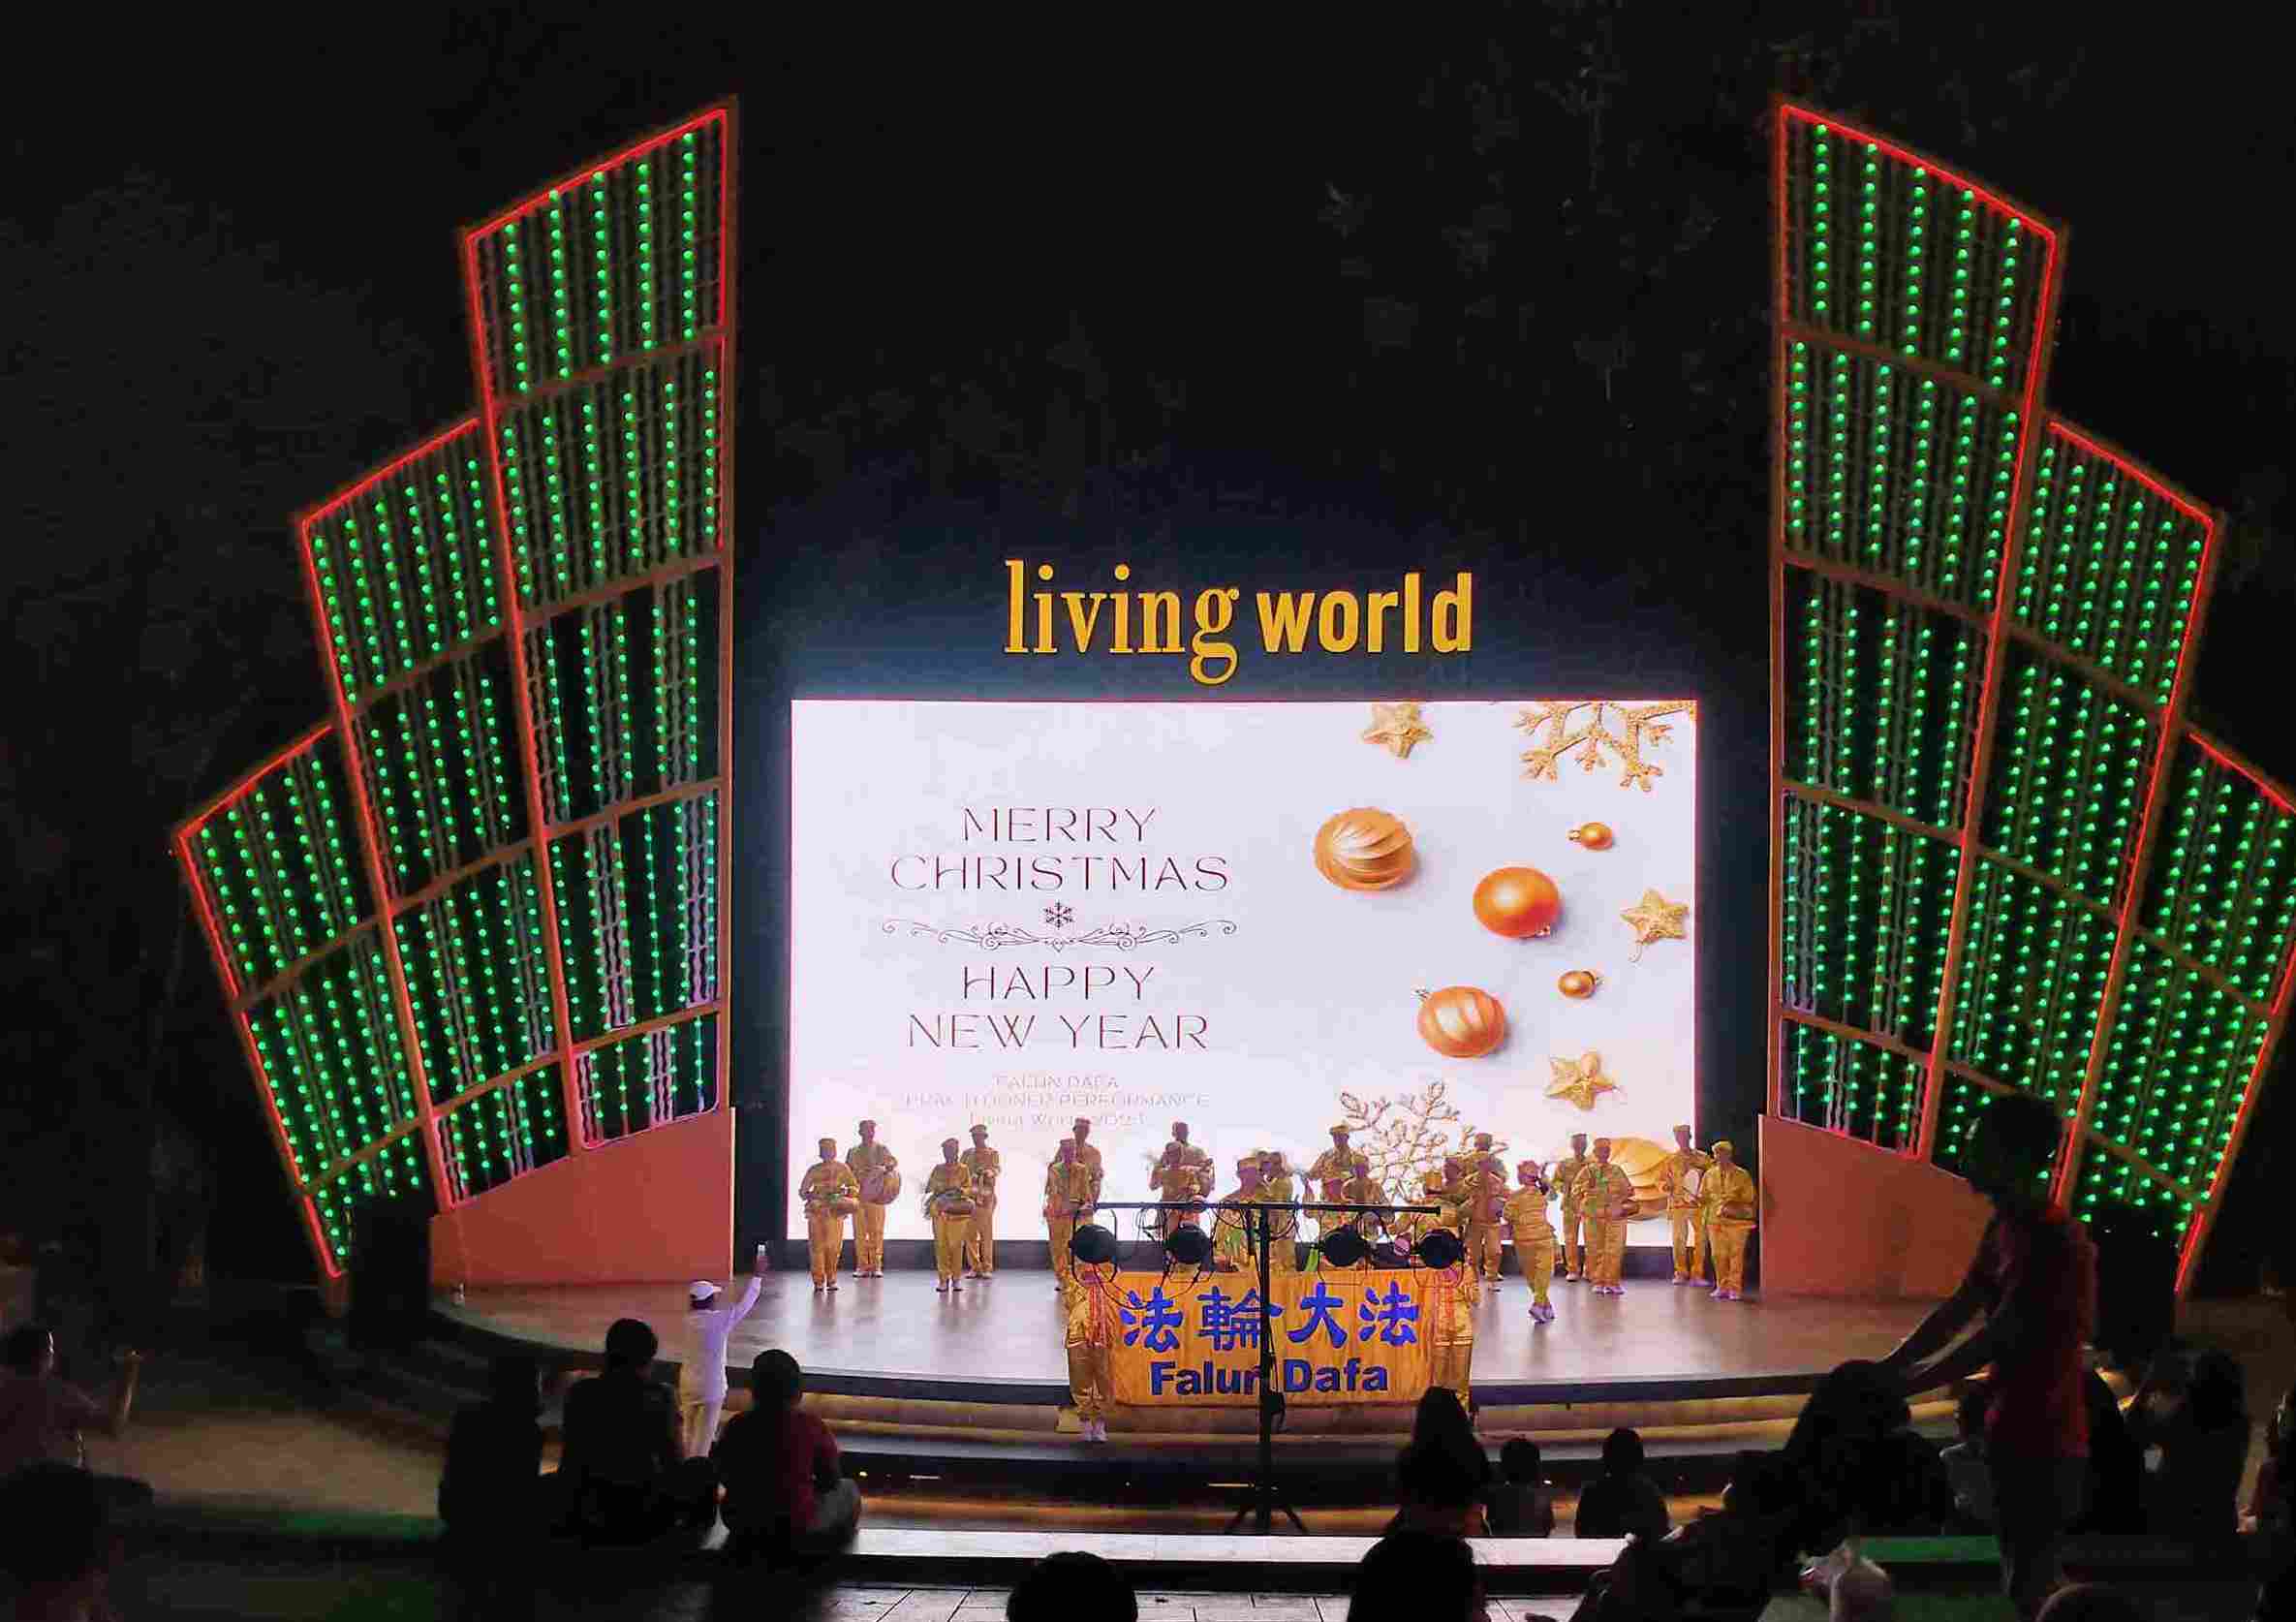 Image for article Bali, Indonésie : Des pratiquants présentent le Falun Dafa dans un théâtre en plein air